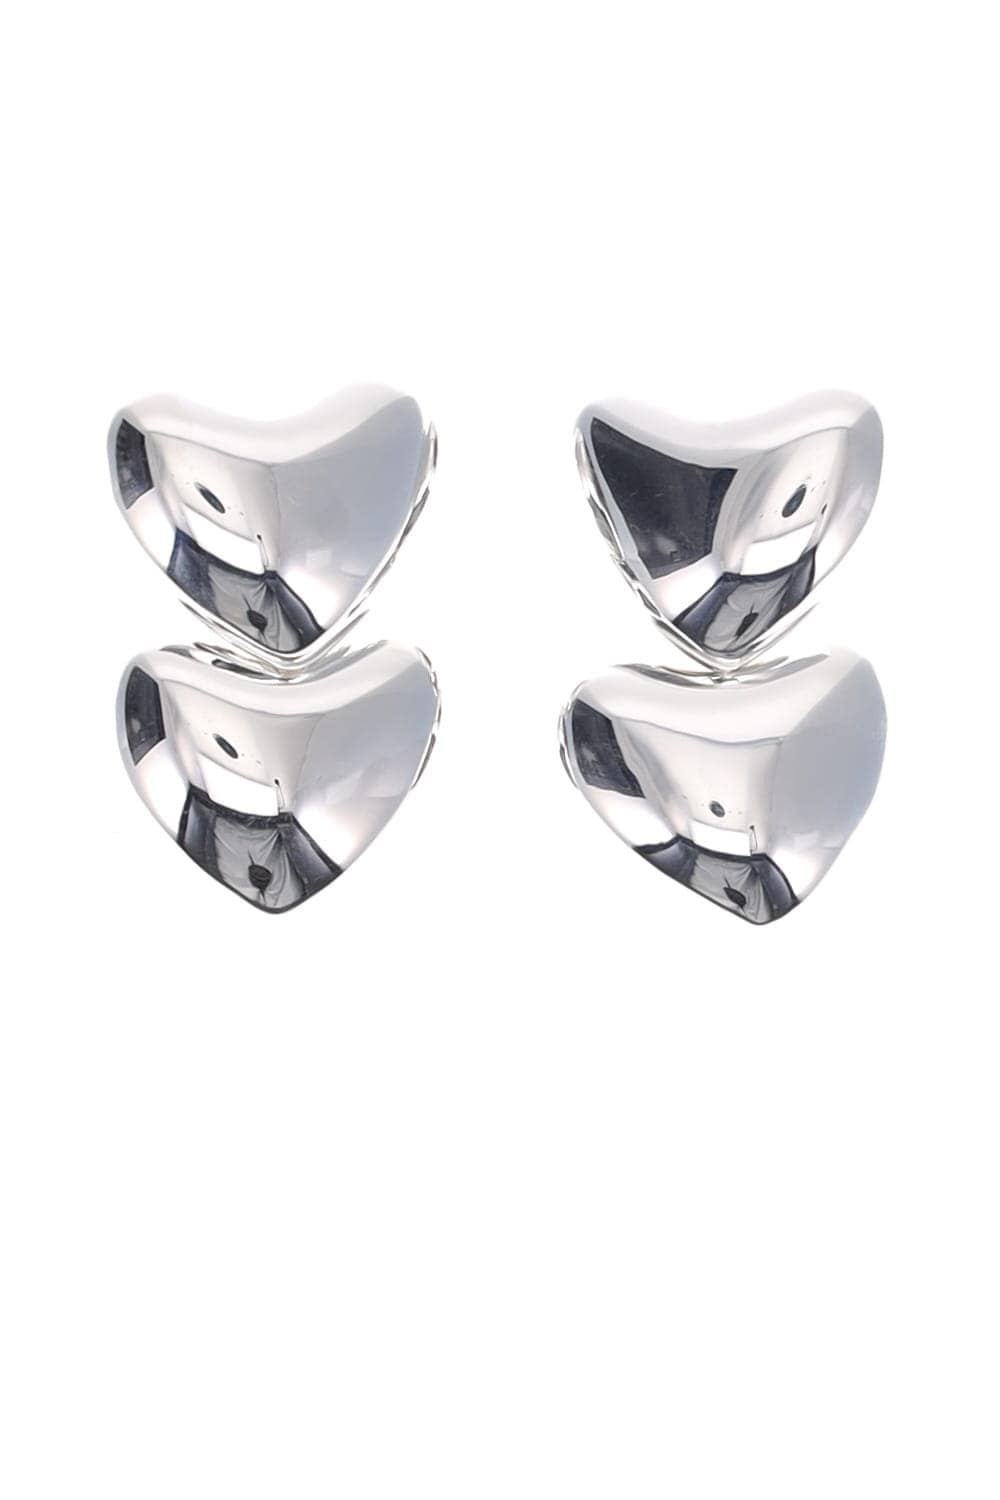 Annika Inez Dual Voluptuous Heart Sterling Silver Earrings